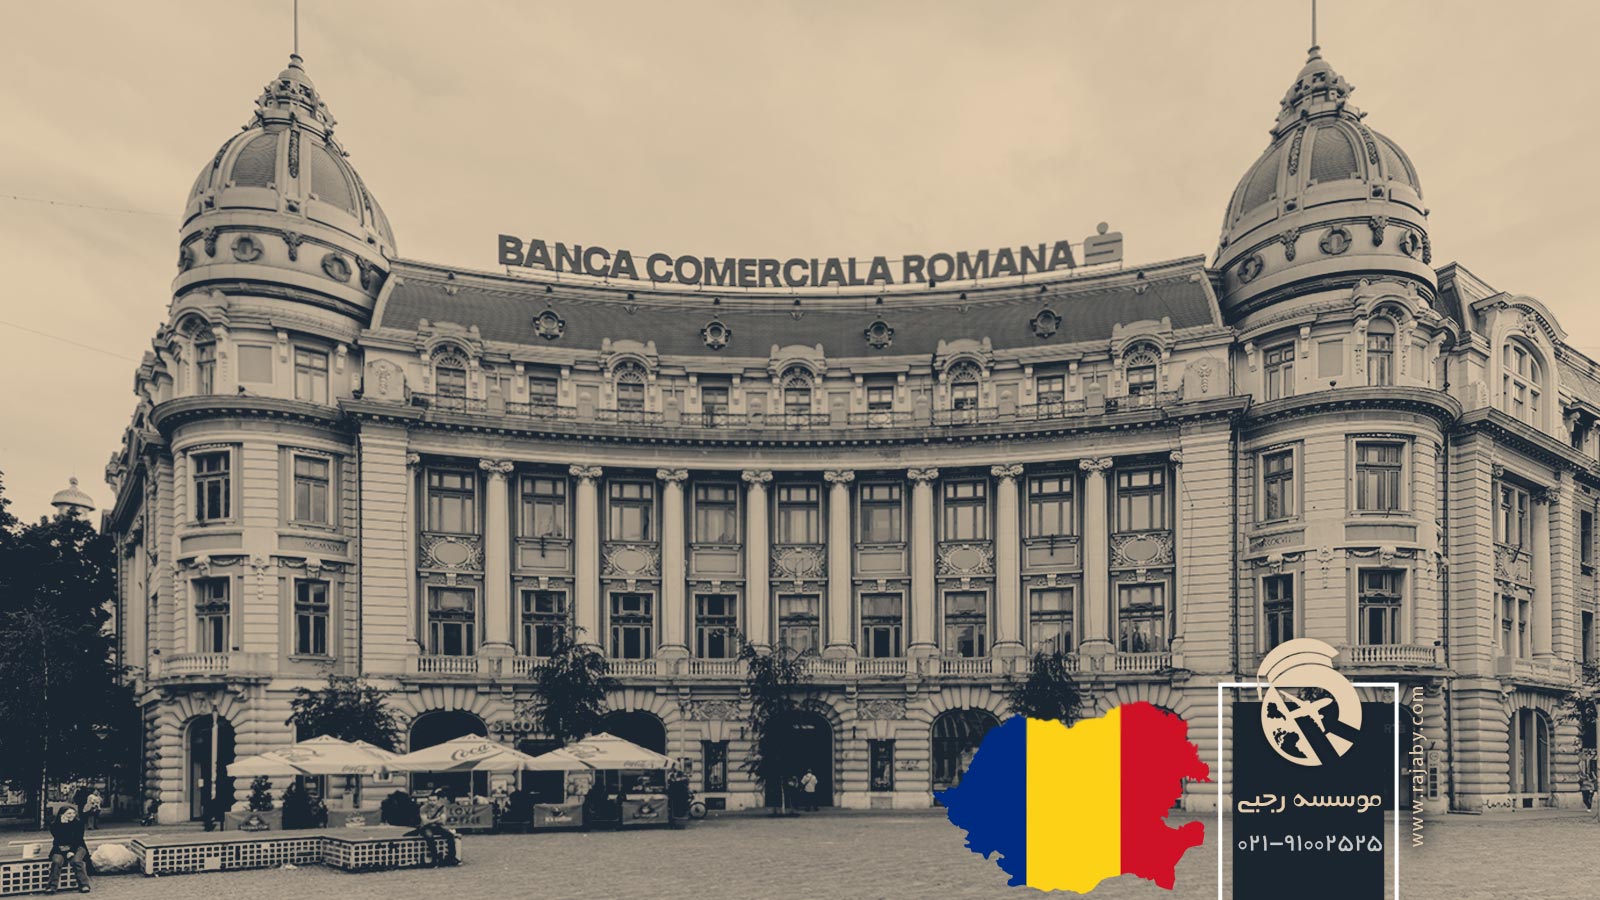 10 شرکت و بانک مهم در رومانی